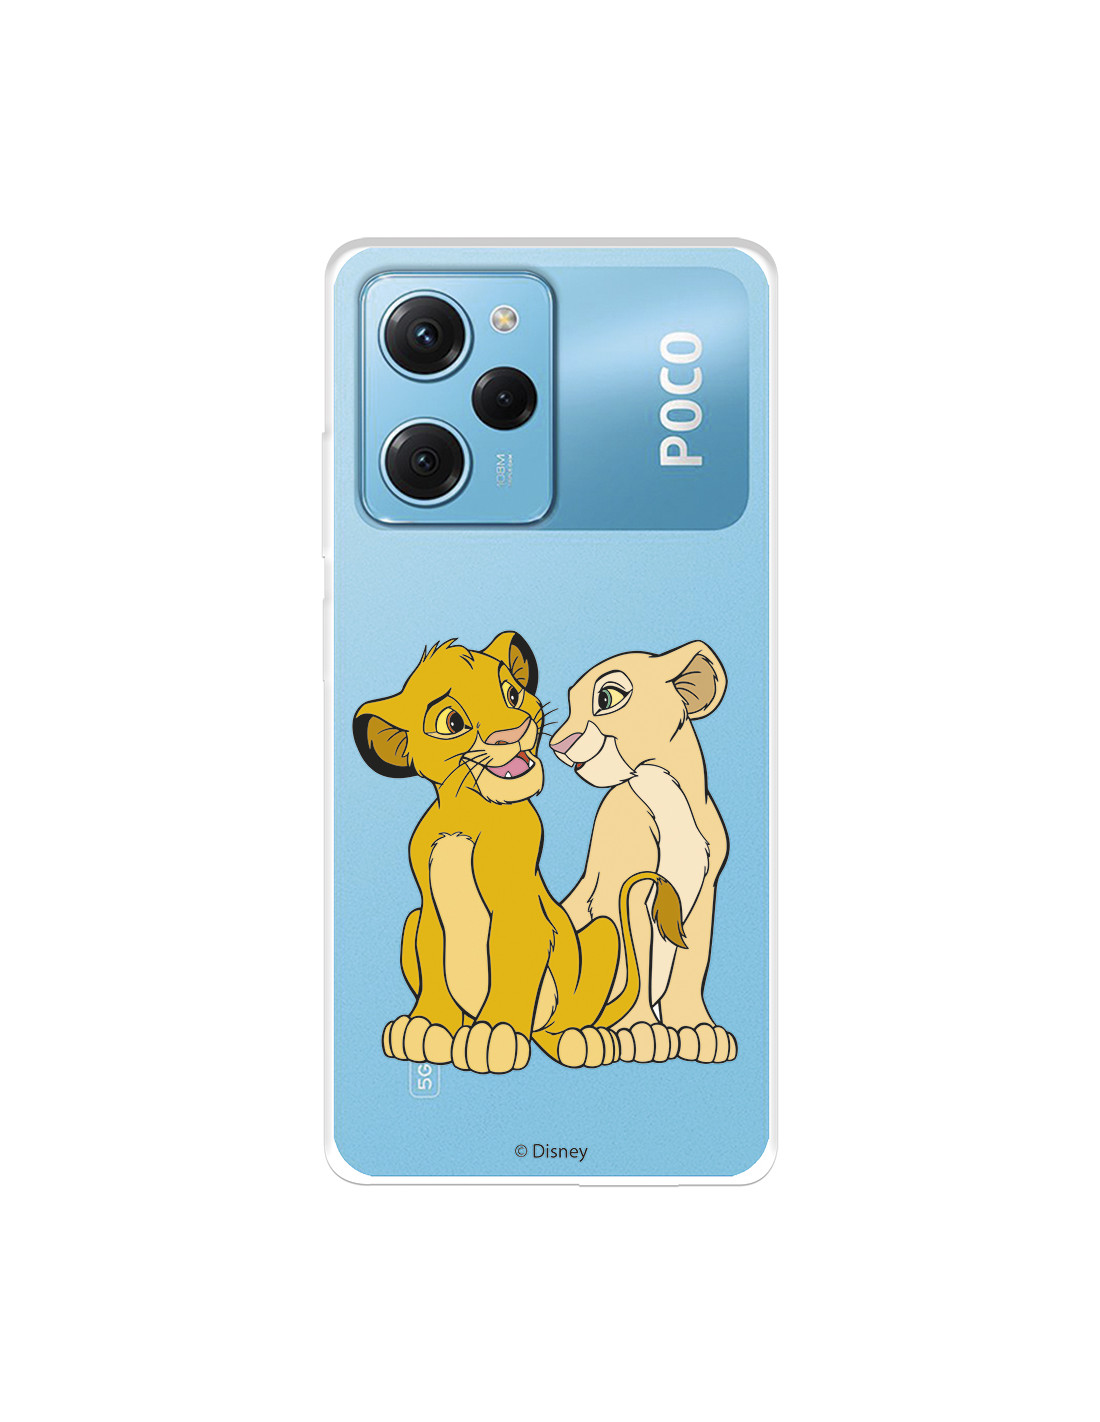 Funda para Xiaomi Redmi 9AT Oficial de Disney Simba y Nala Silueta